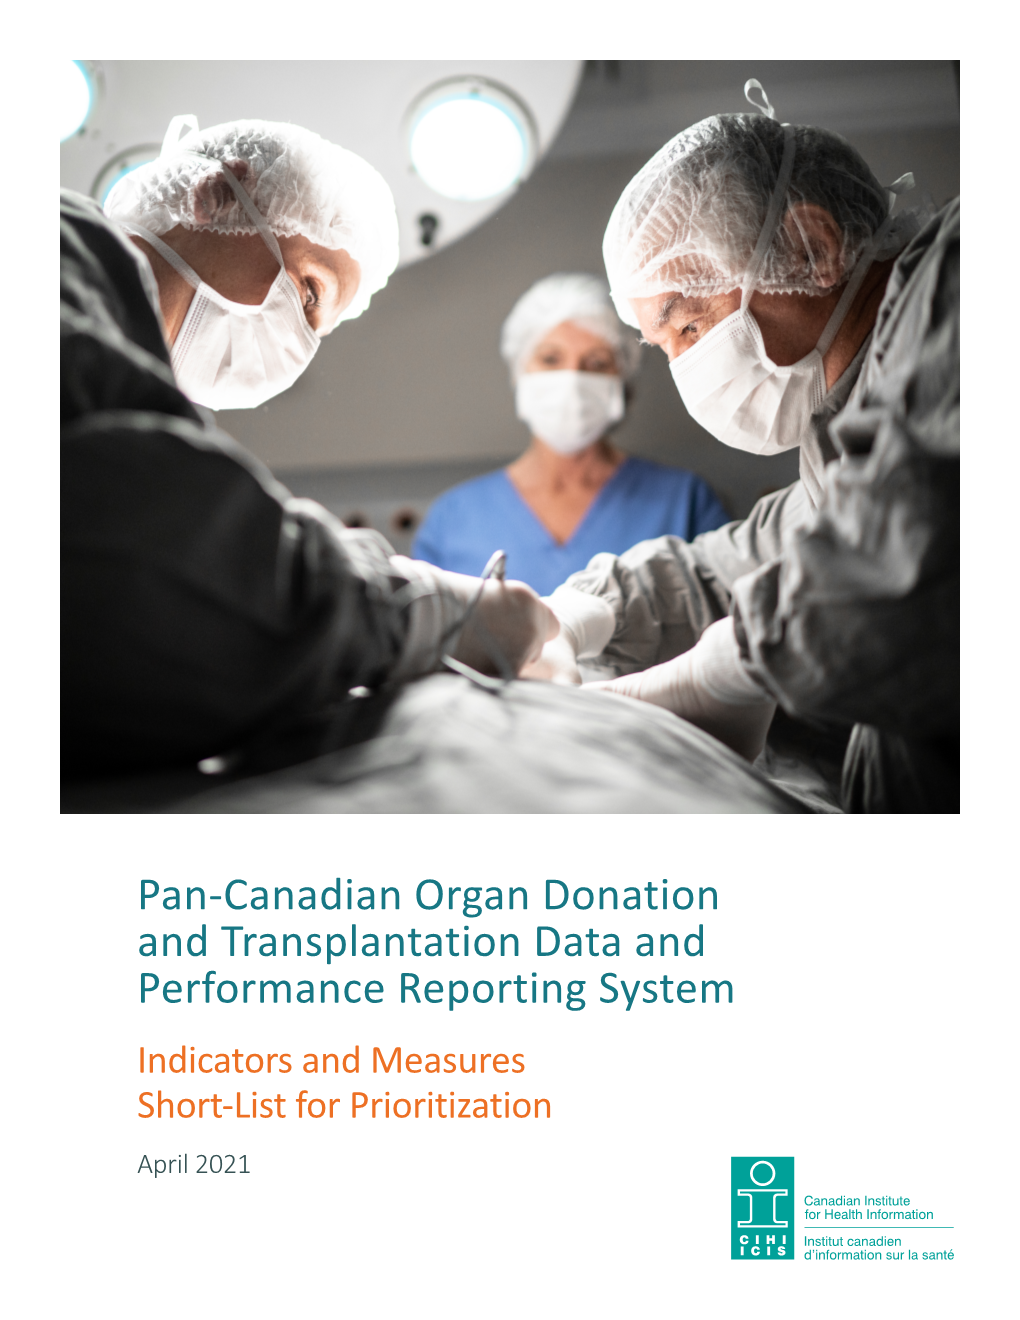 Pan-Canadian Organ Donation and Transplantation Data And